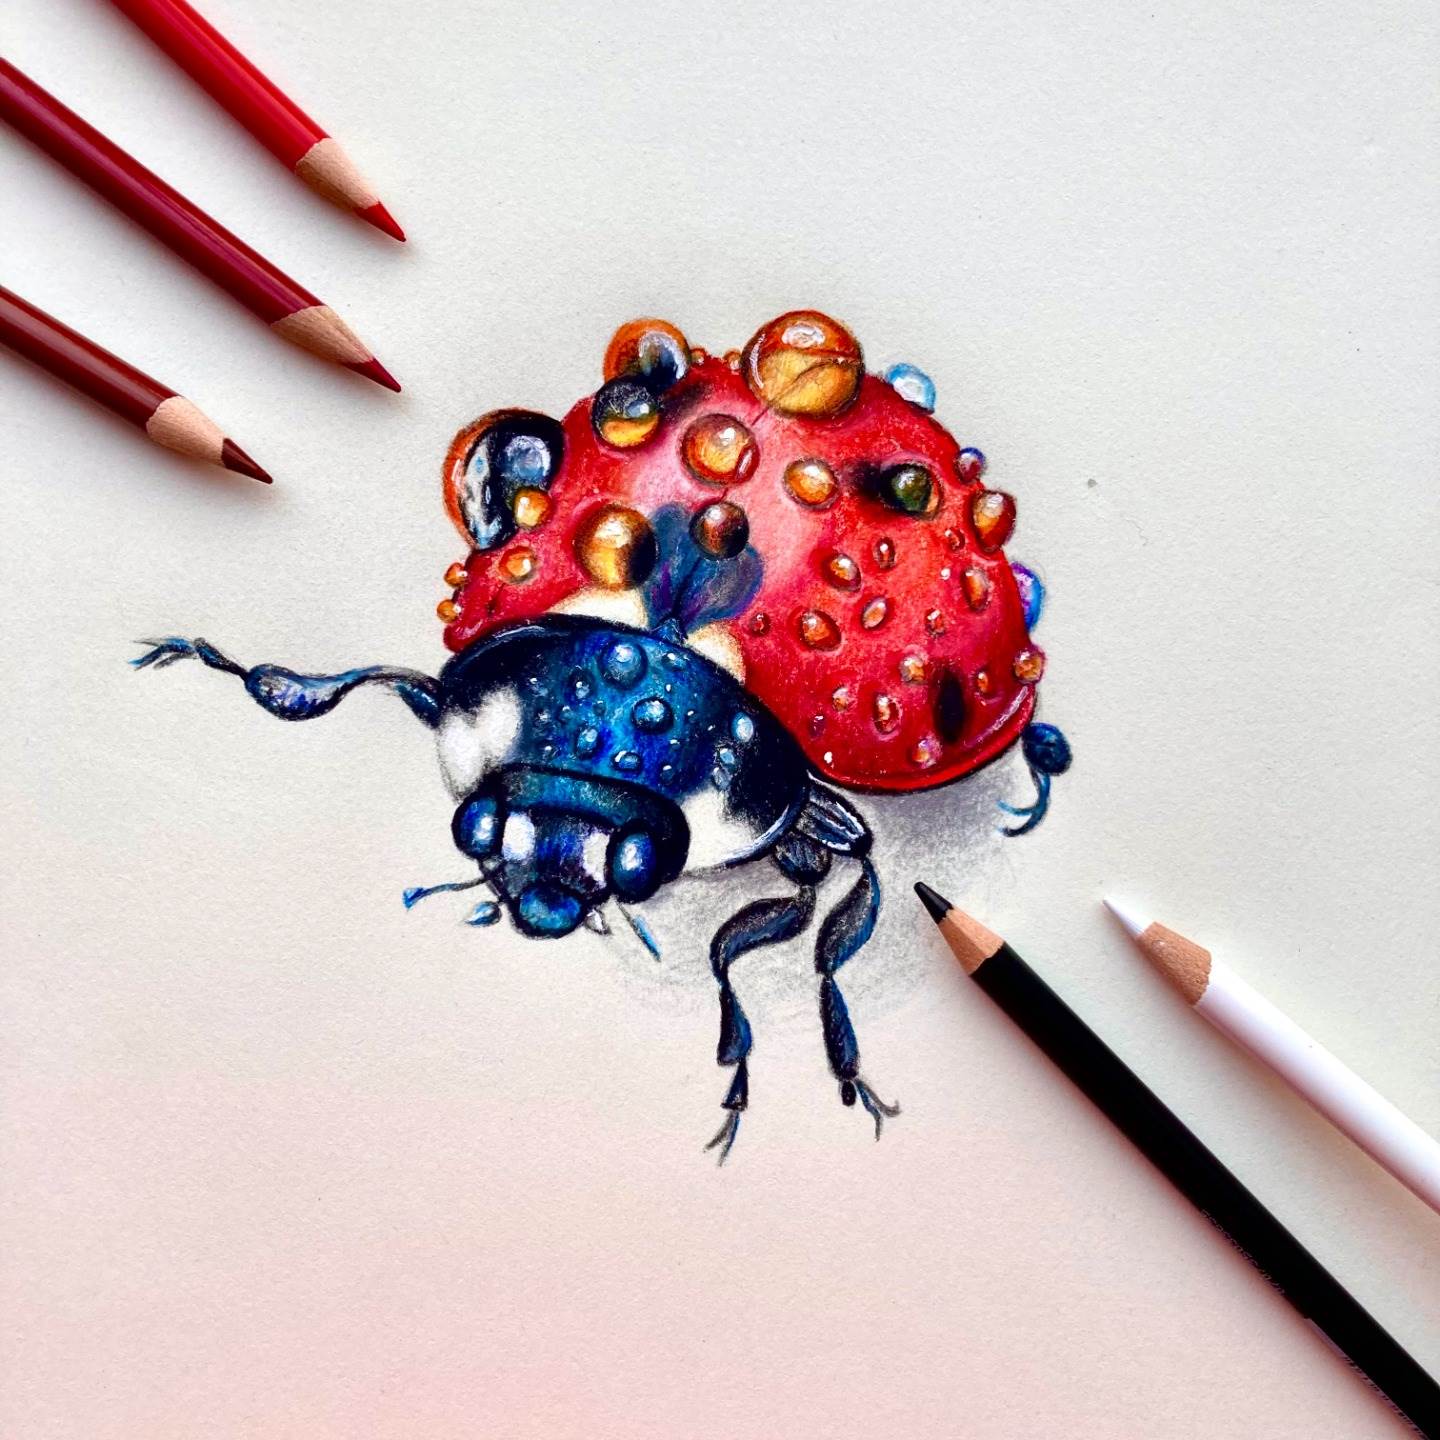 Lifelike Ladybug Leads to NJASBO Art Win for Mackenzie Fazio